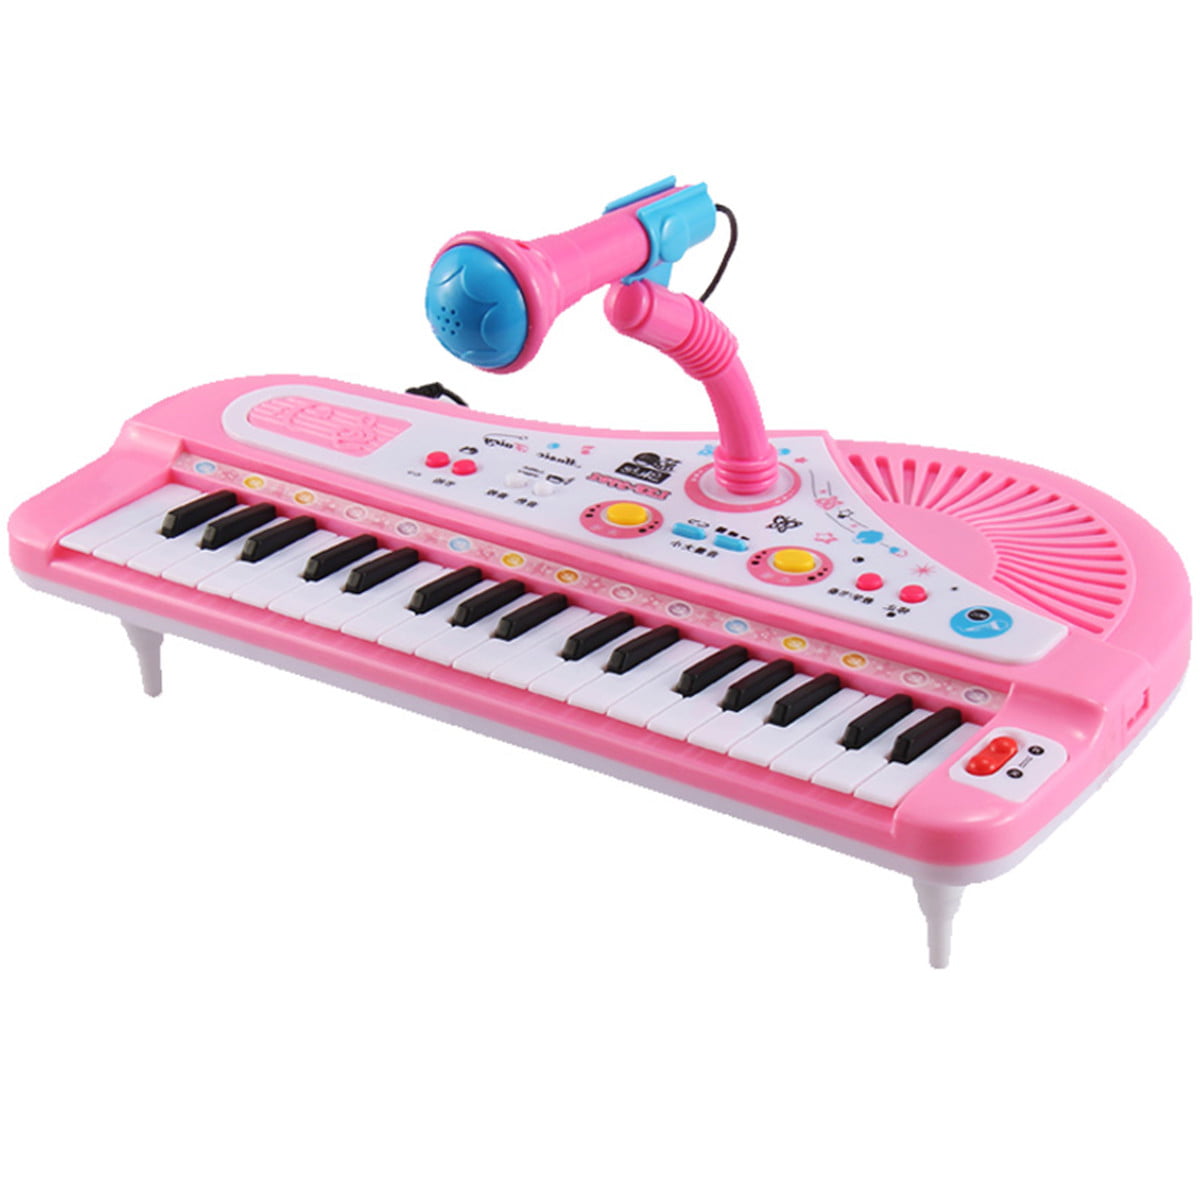 Kids Toddler 37 Keys Plastic Electronic Organ Keyboard Kit With Microphone 